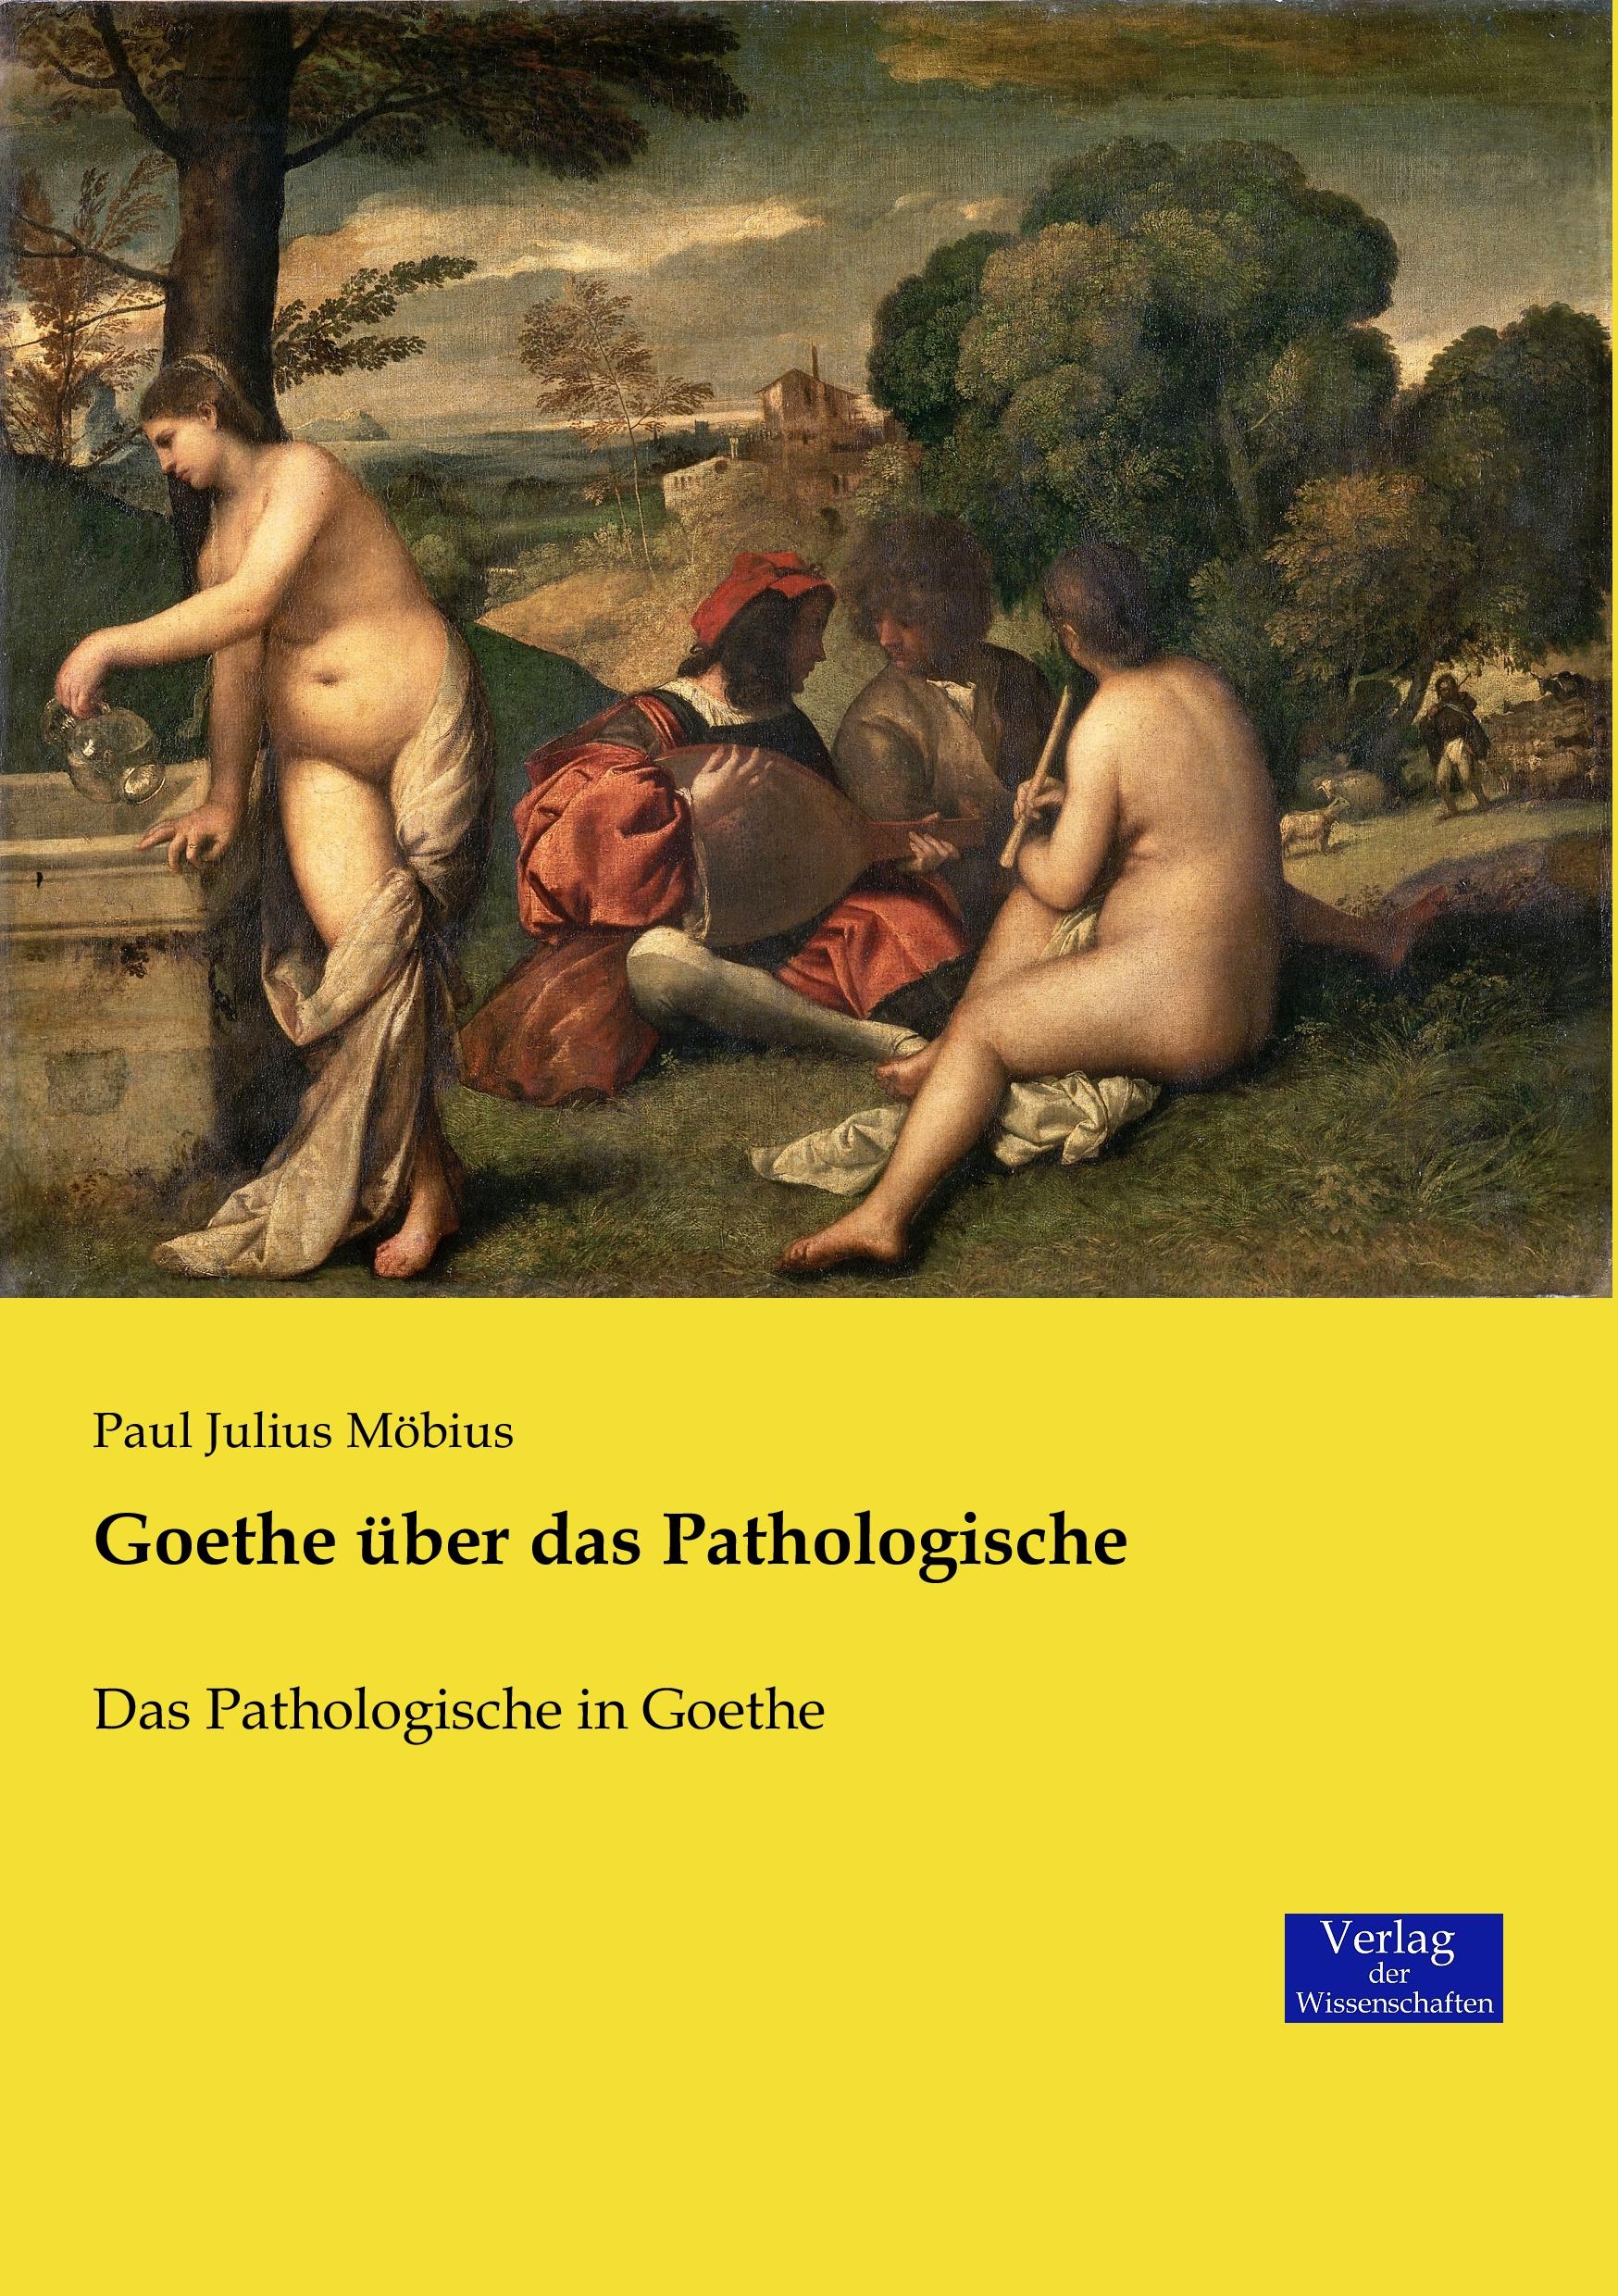 Goethe über das Pathologische / Das Pathologische in Goethe / Paul Julius Möbius / Taschenbuch / Paperback / 284 S. / Deutsch / 2019 / Vero Verlag / EAN 9783957008022 - Möbius, Paul Julius